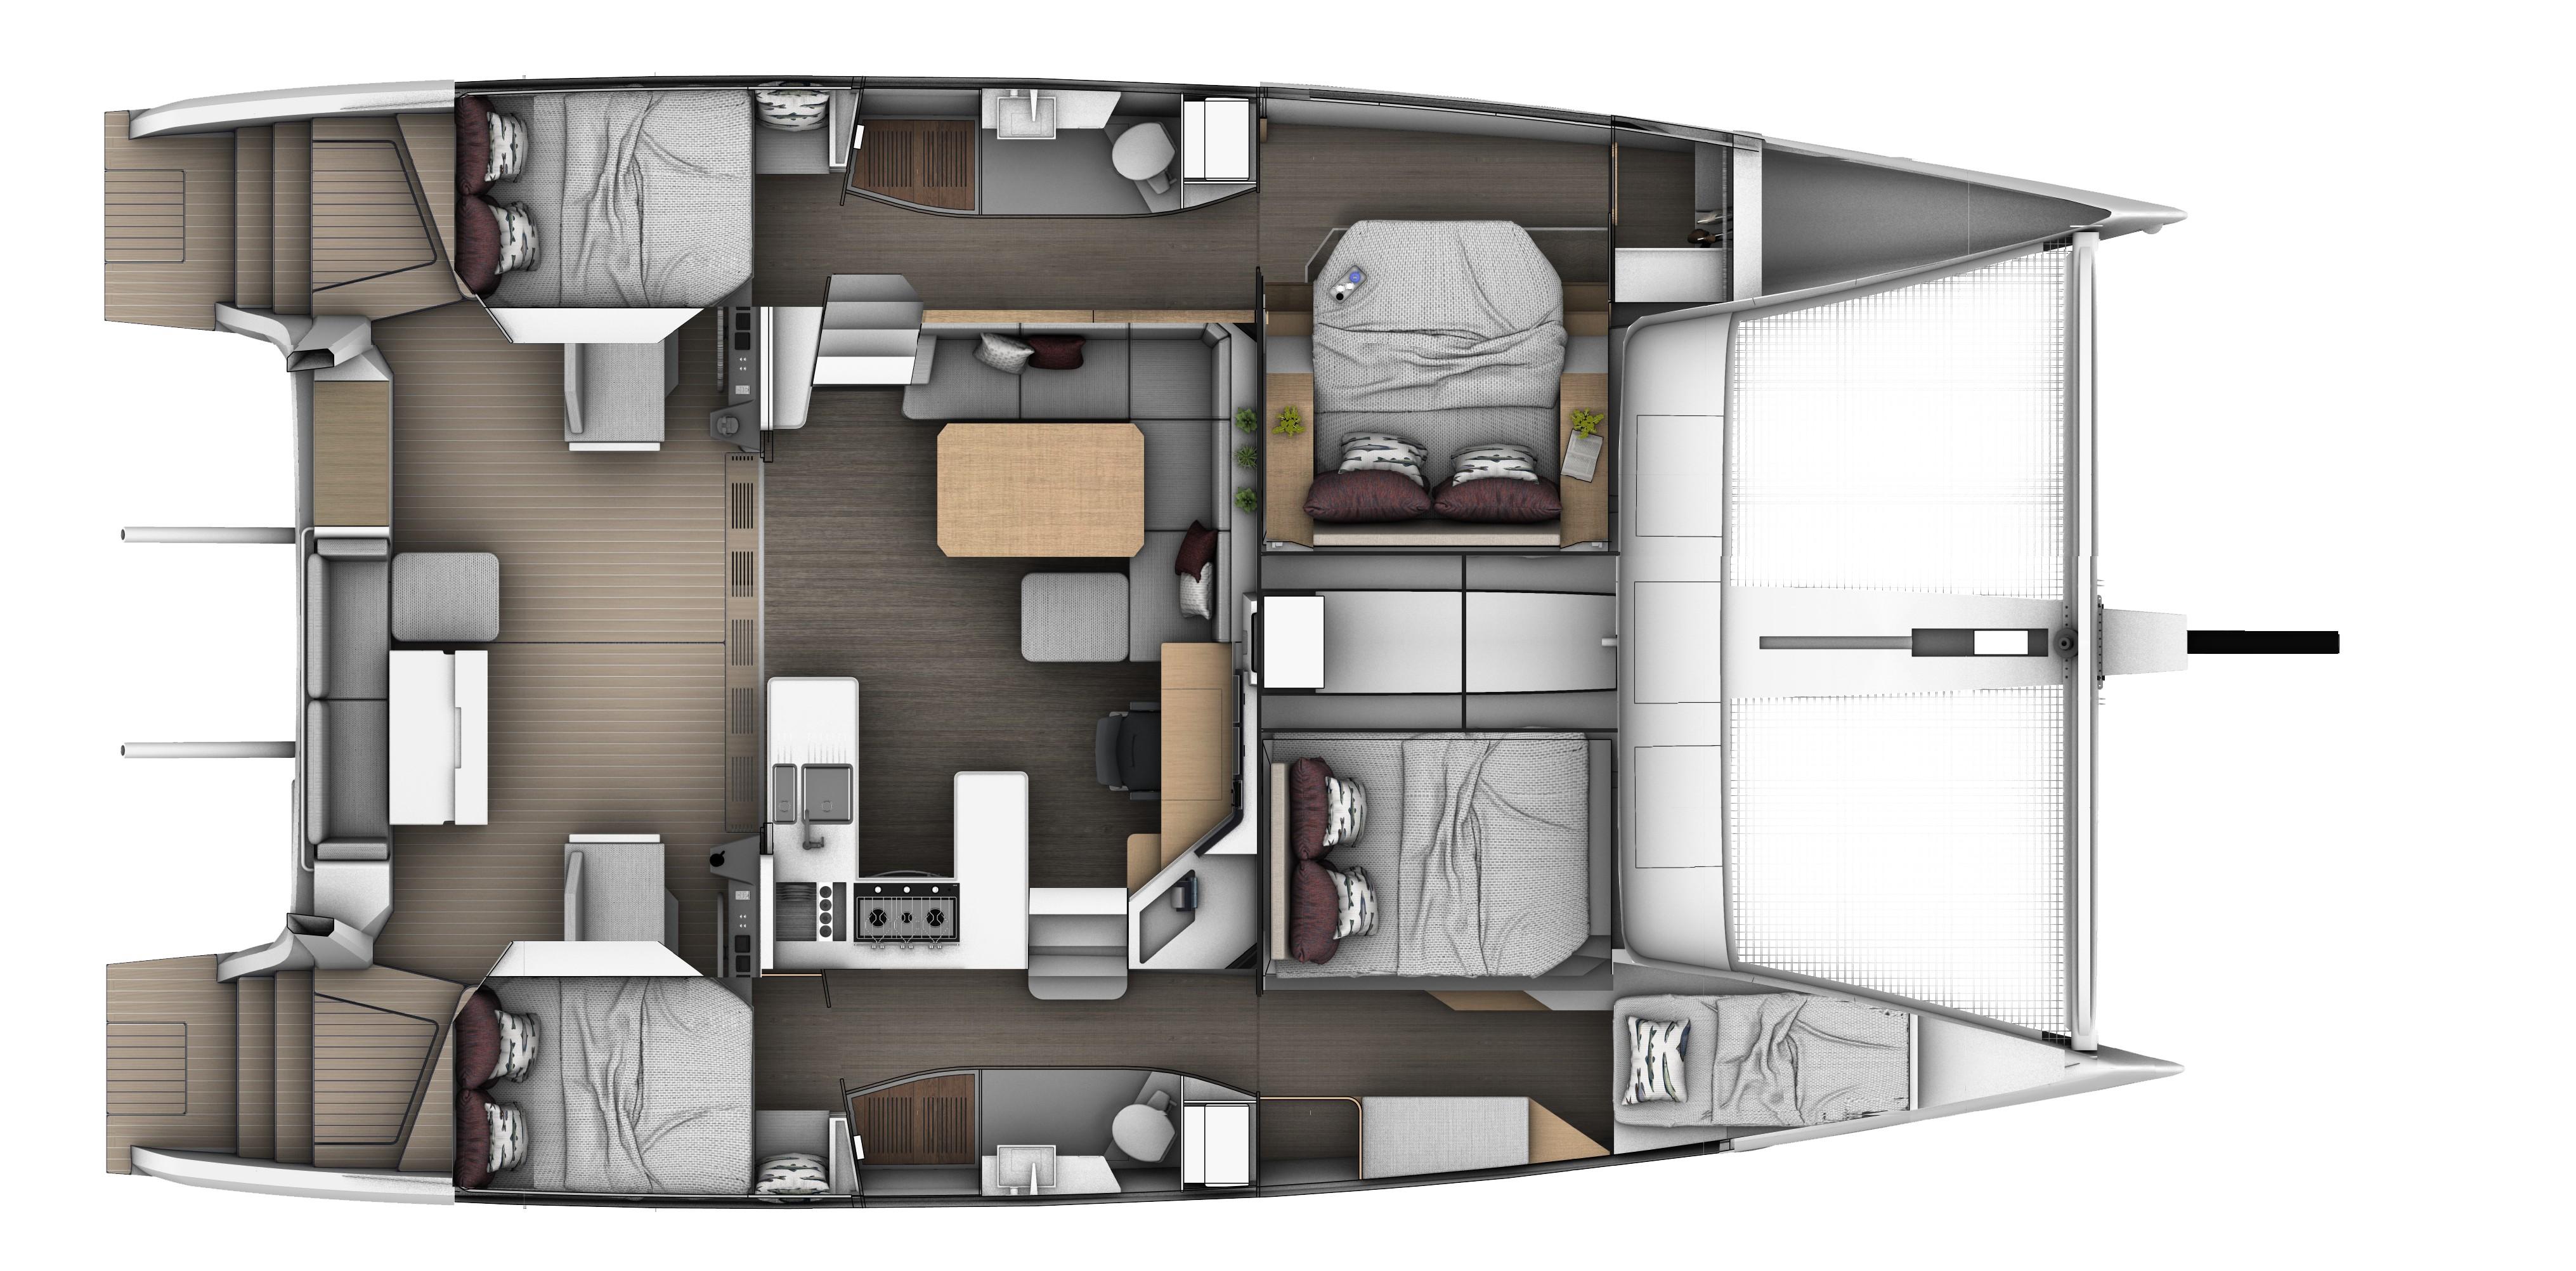 SEAWIND 1370 4 cabin 2 head layout